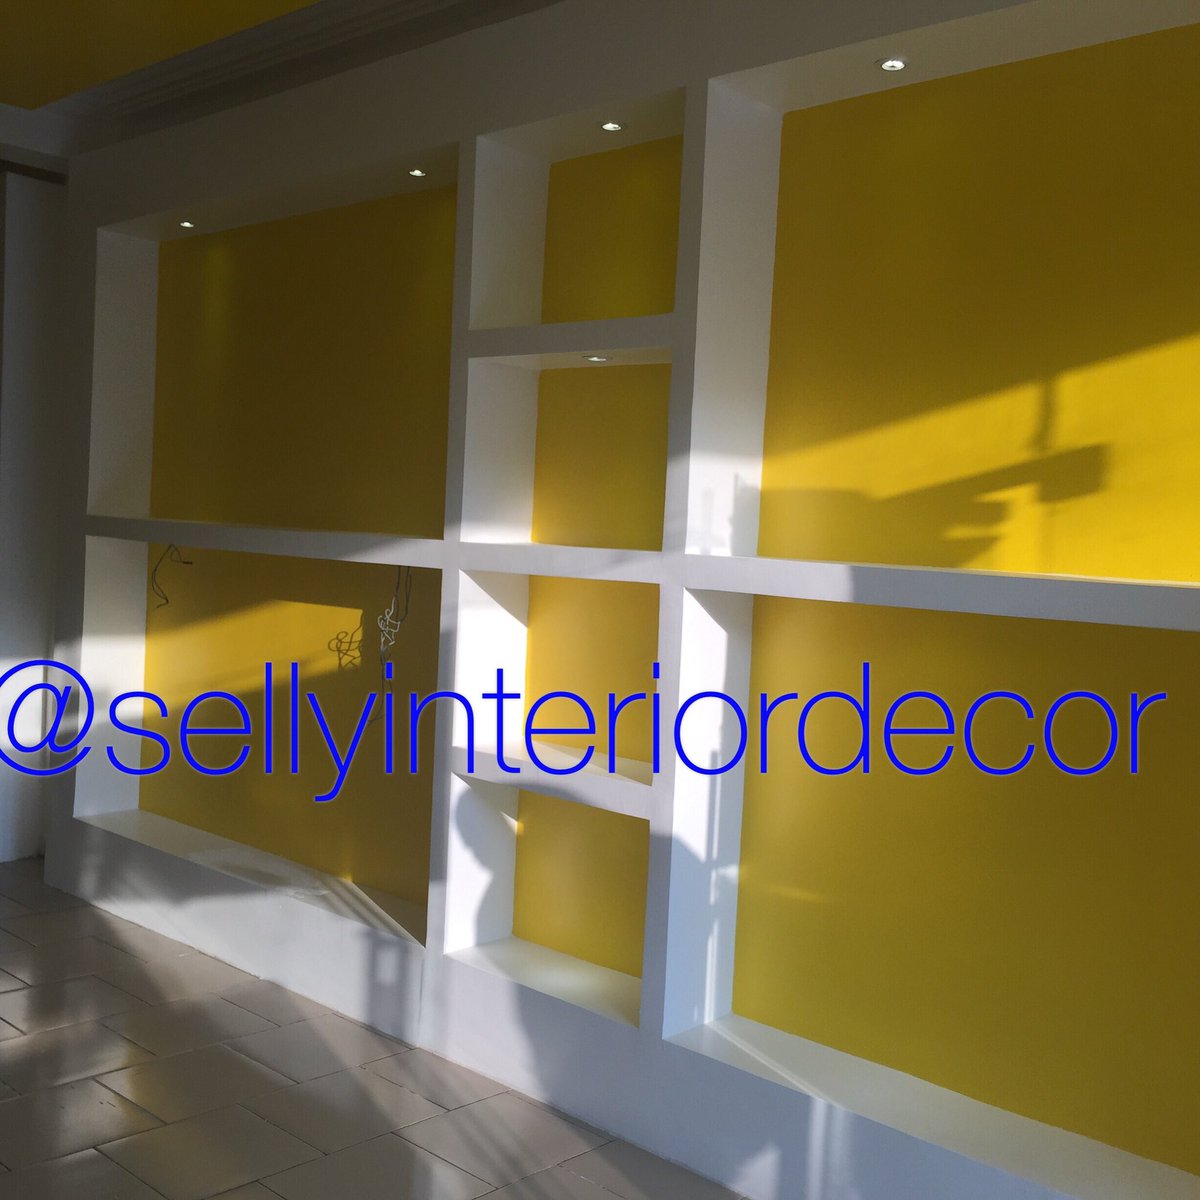 TB#design by @SellyInterior few years ago😍😍 #interiordesign #shopdesign #classic #beaut #sellyinteriordecor